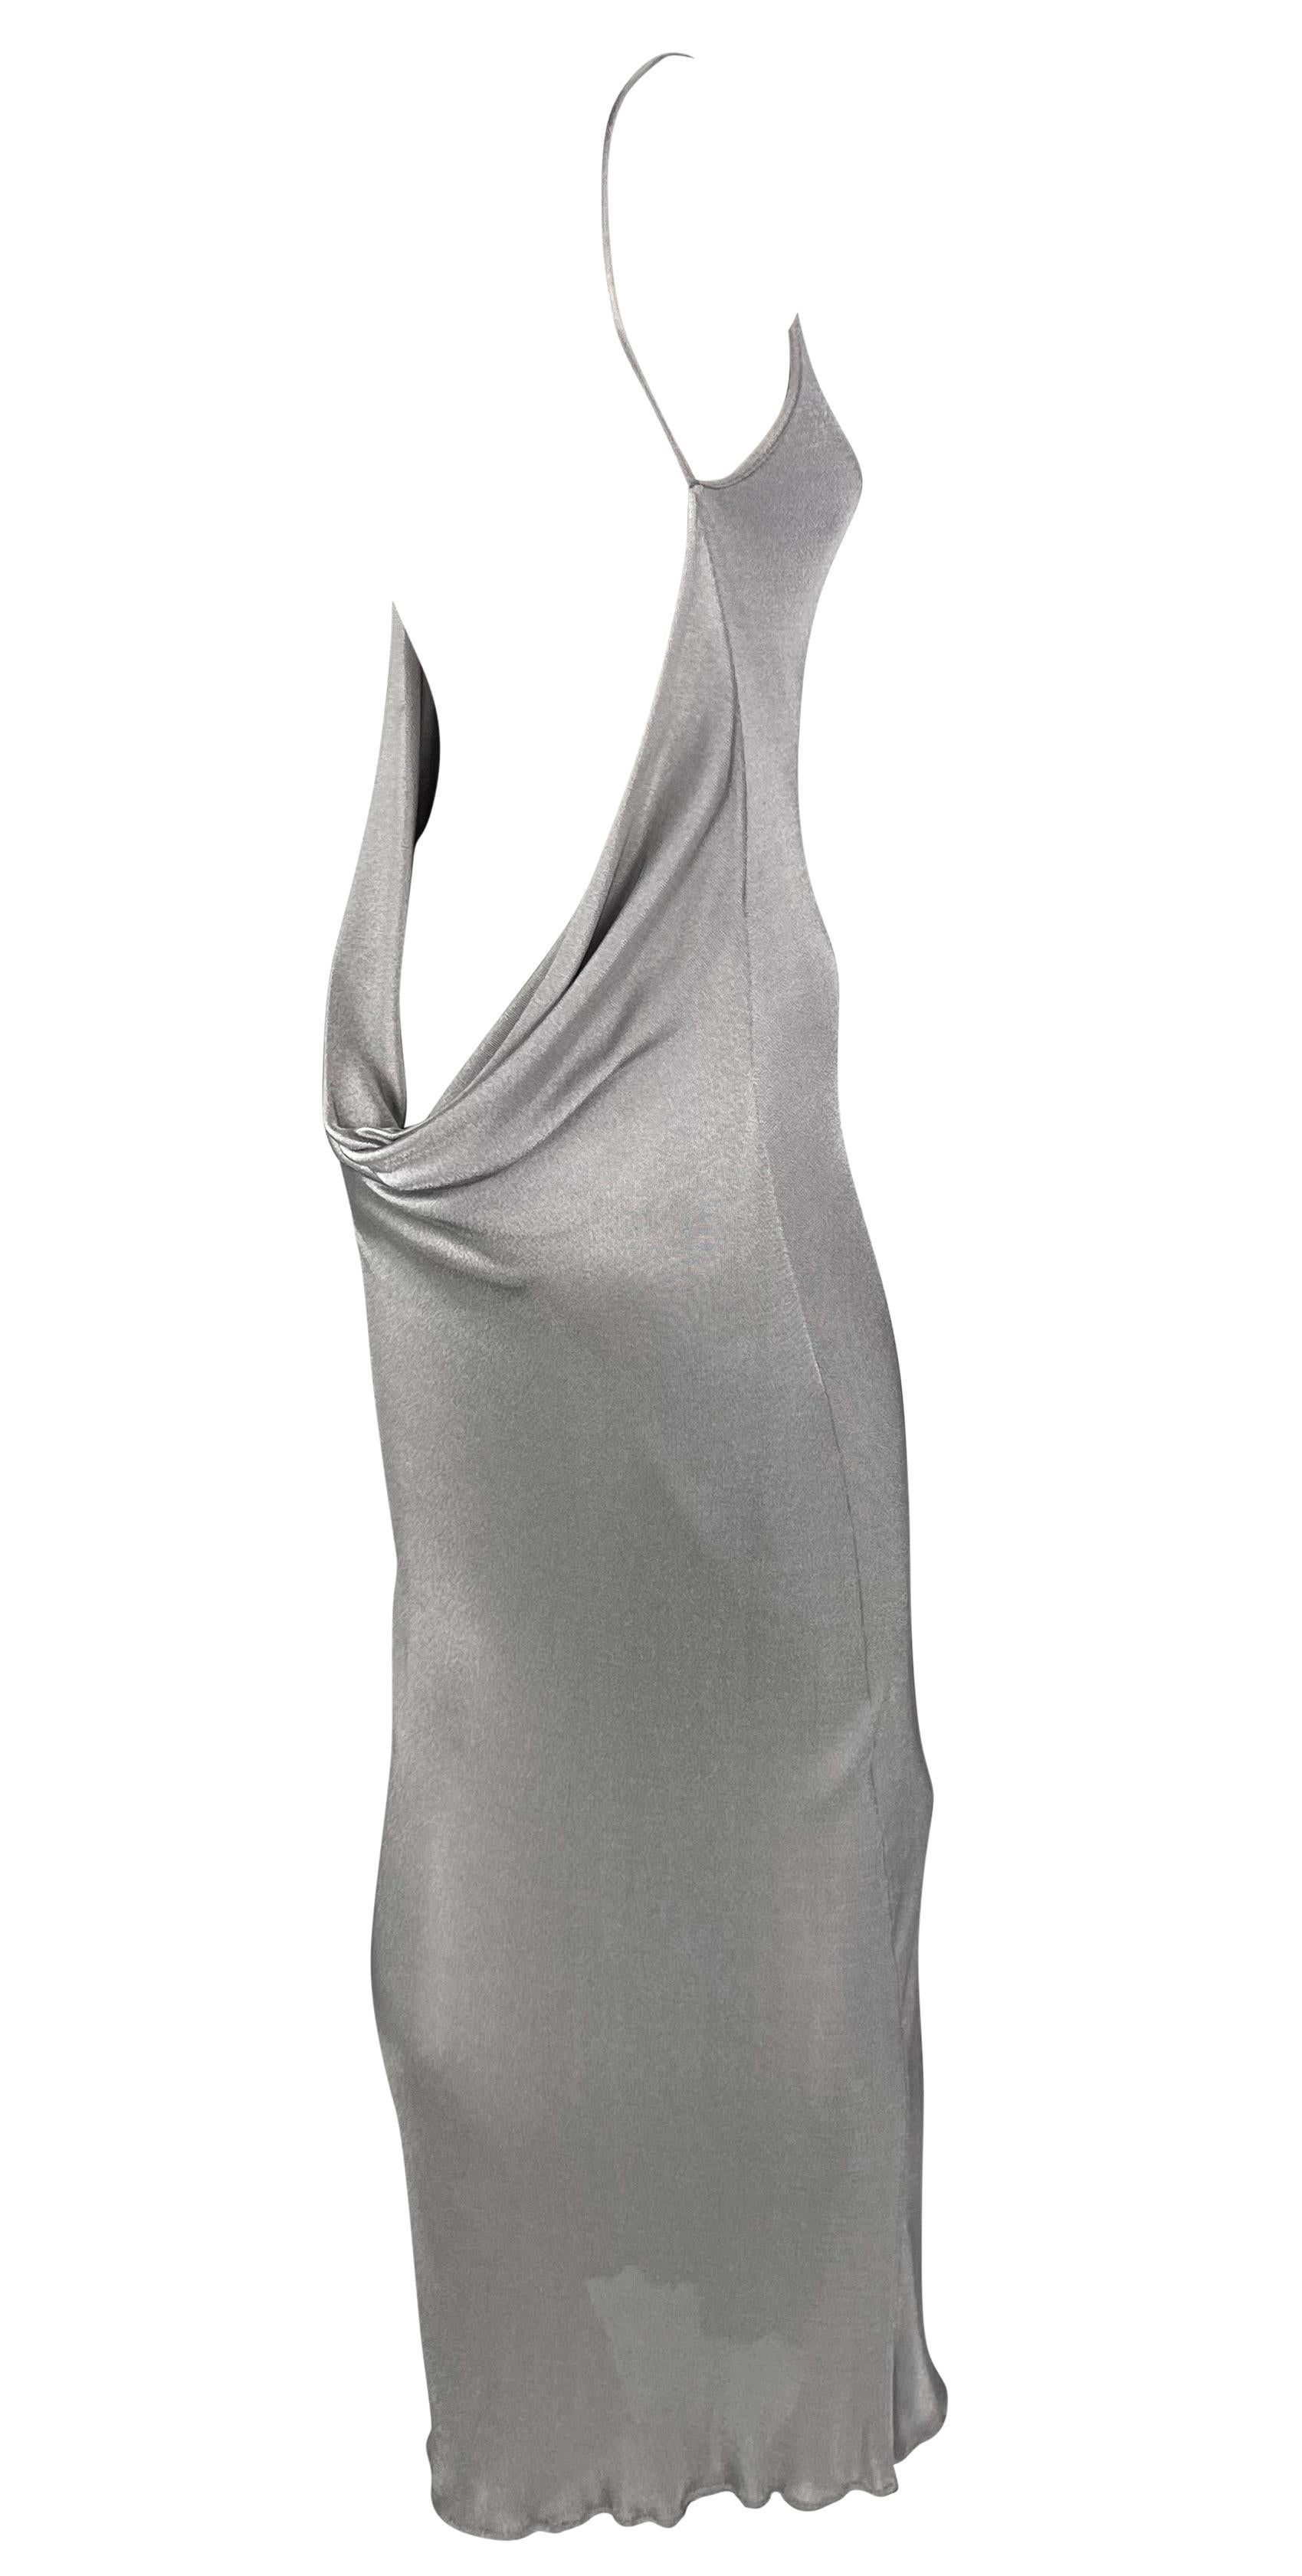 Dieses rückenfreie silberne Kleid von Yigal Azrouël aus den späten 1990er Jahren ist der Inbegriff von Vielseitigkeit. Dieses schicke Kleid eignet sich sowohl für formelle Anlässe als auch für zwanglose Veranstaltungen. Es hat einen hohen, weiten